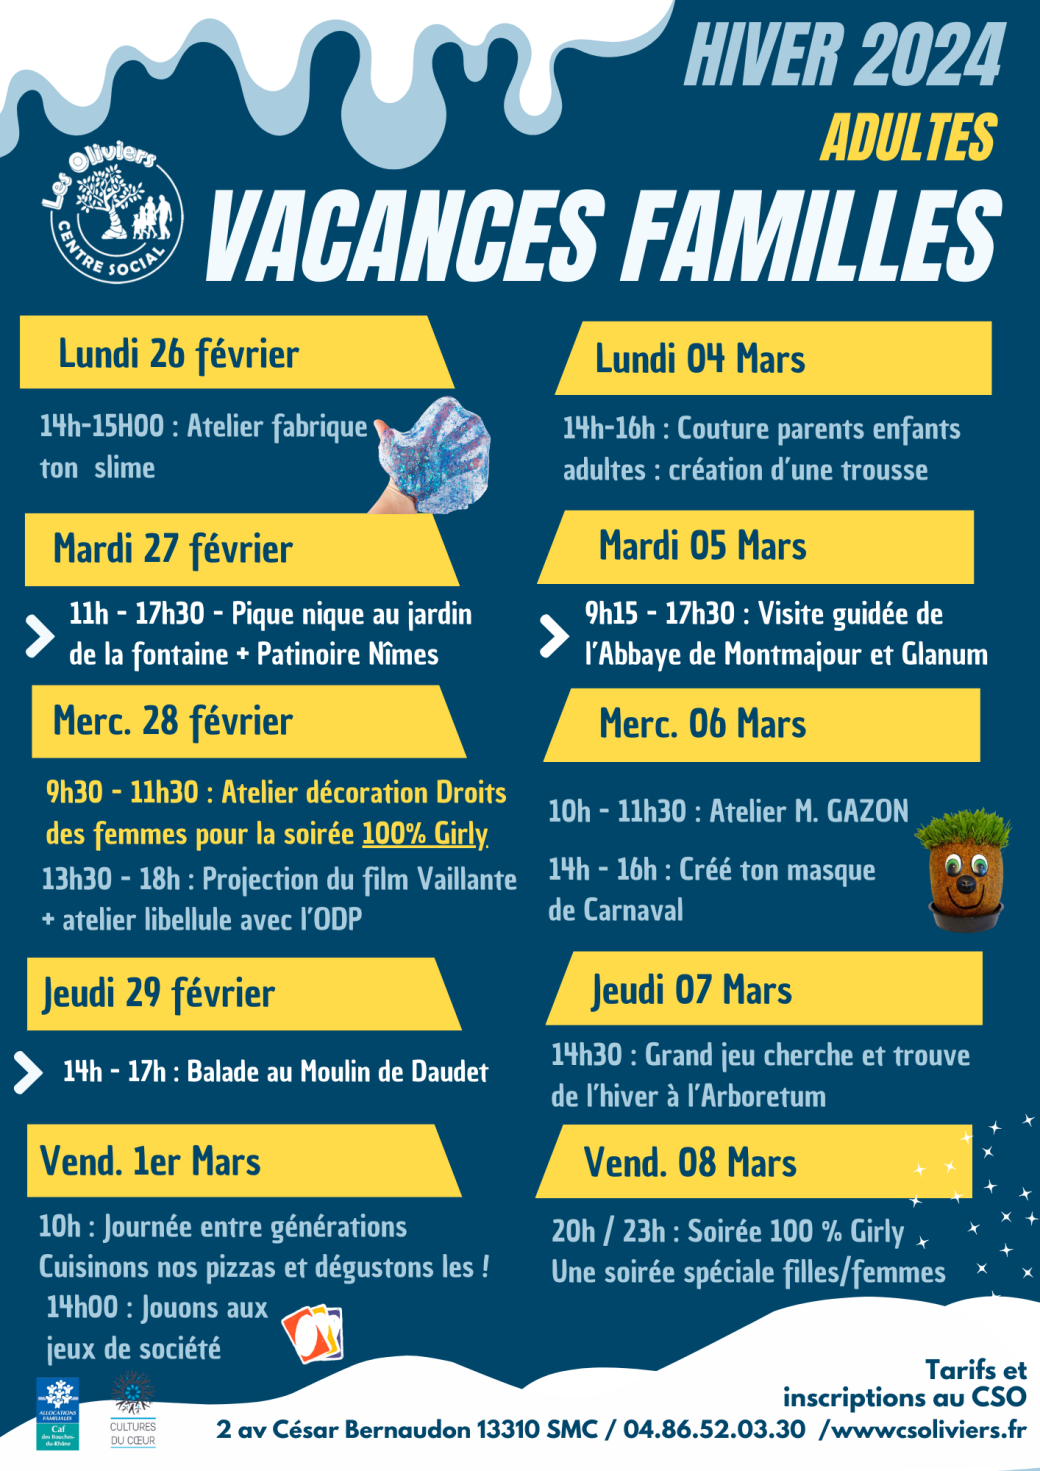 Vacances famille hiver 2024 c3525